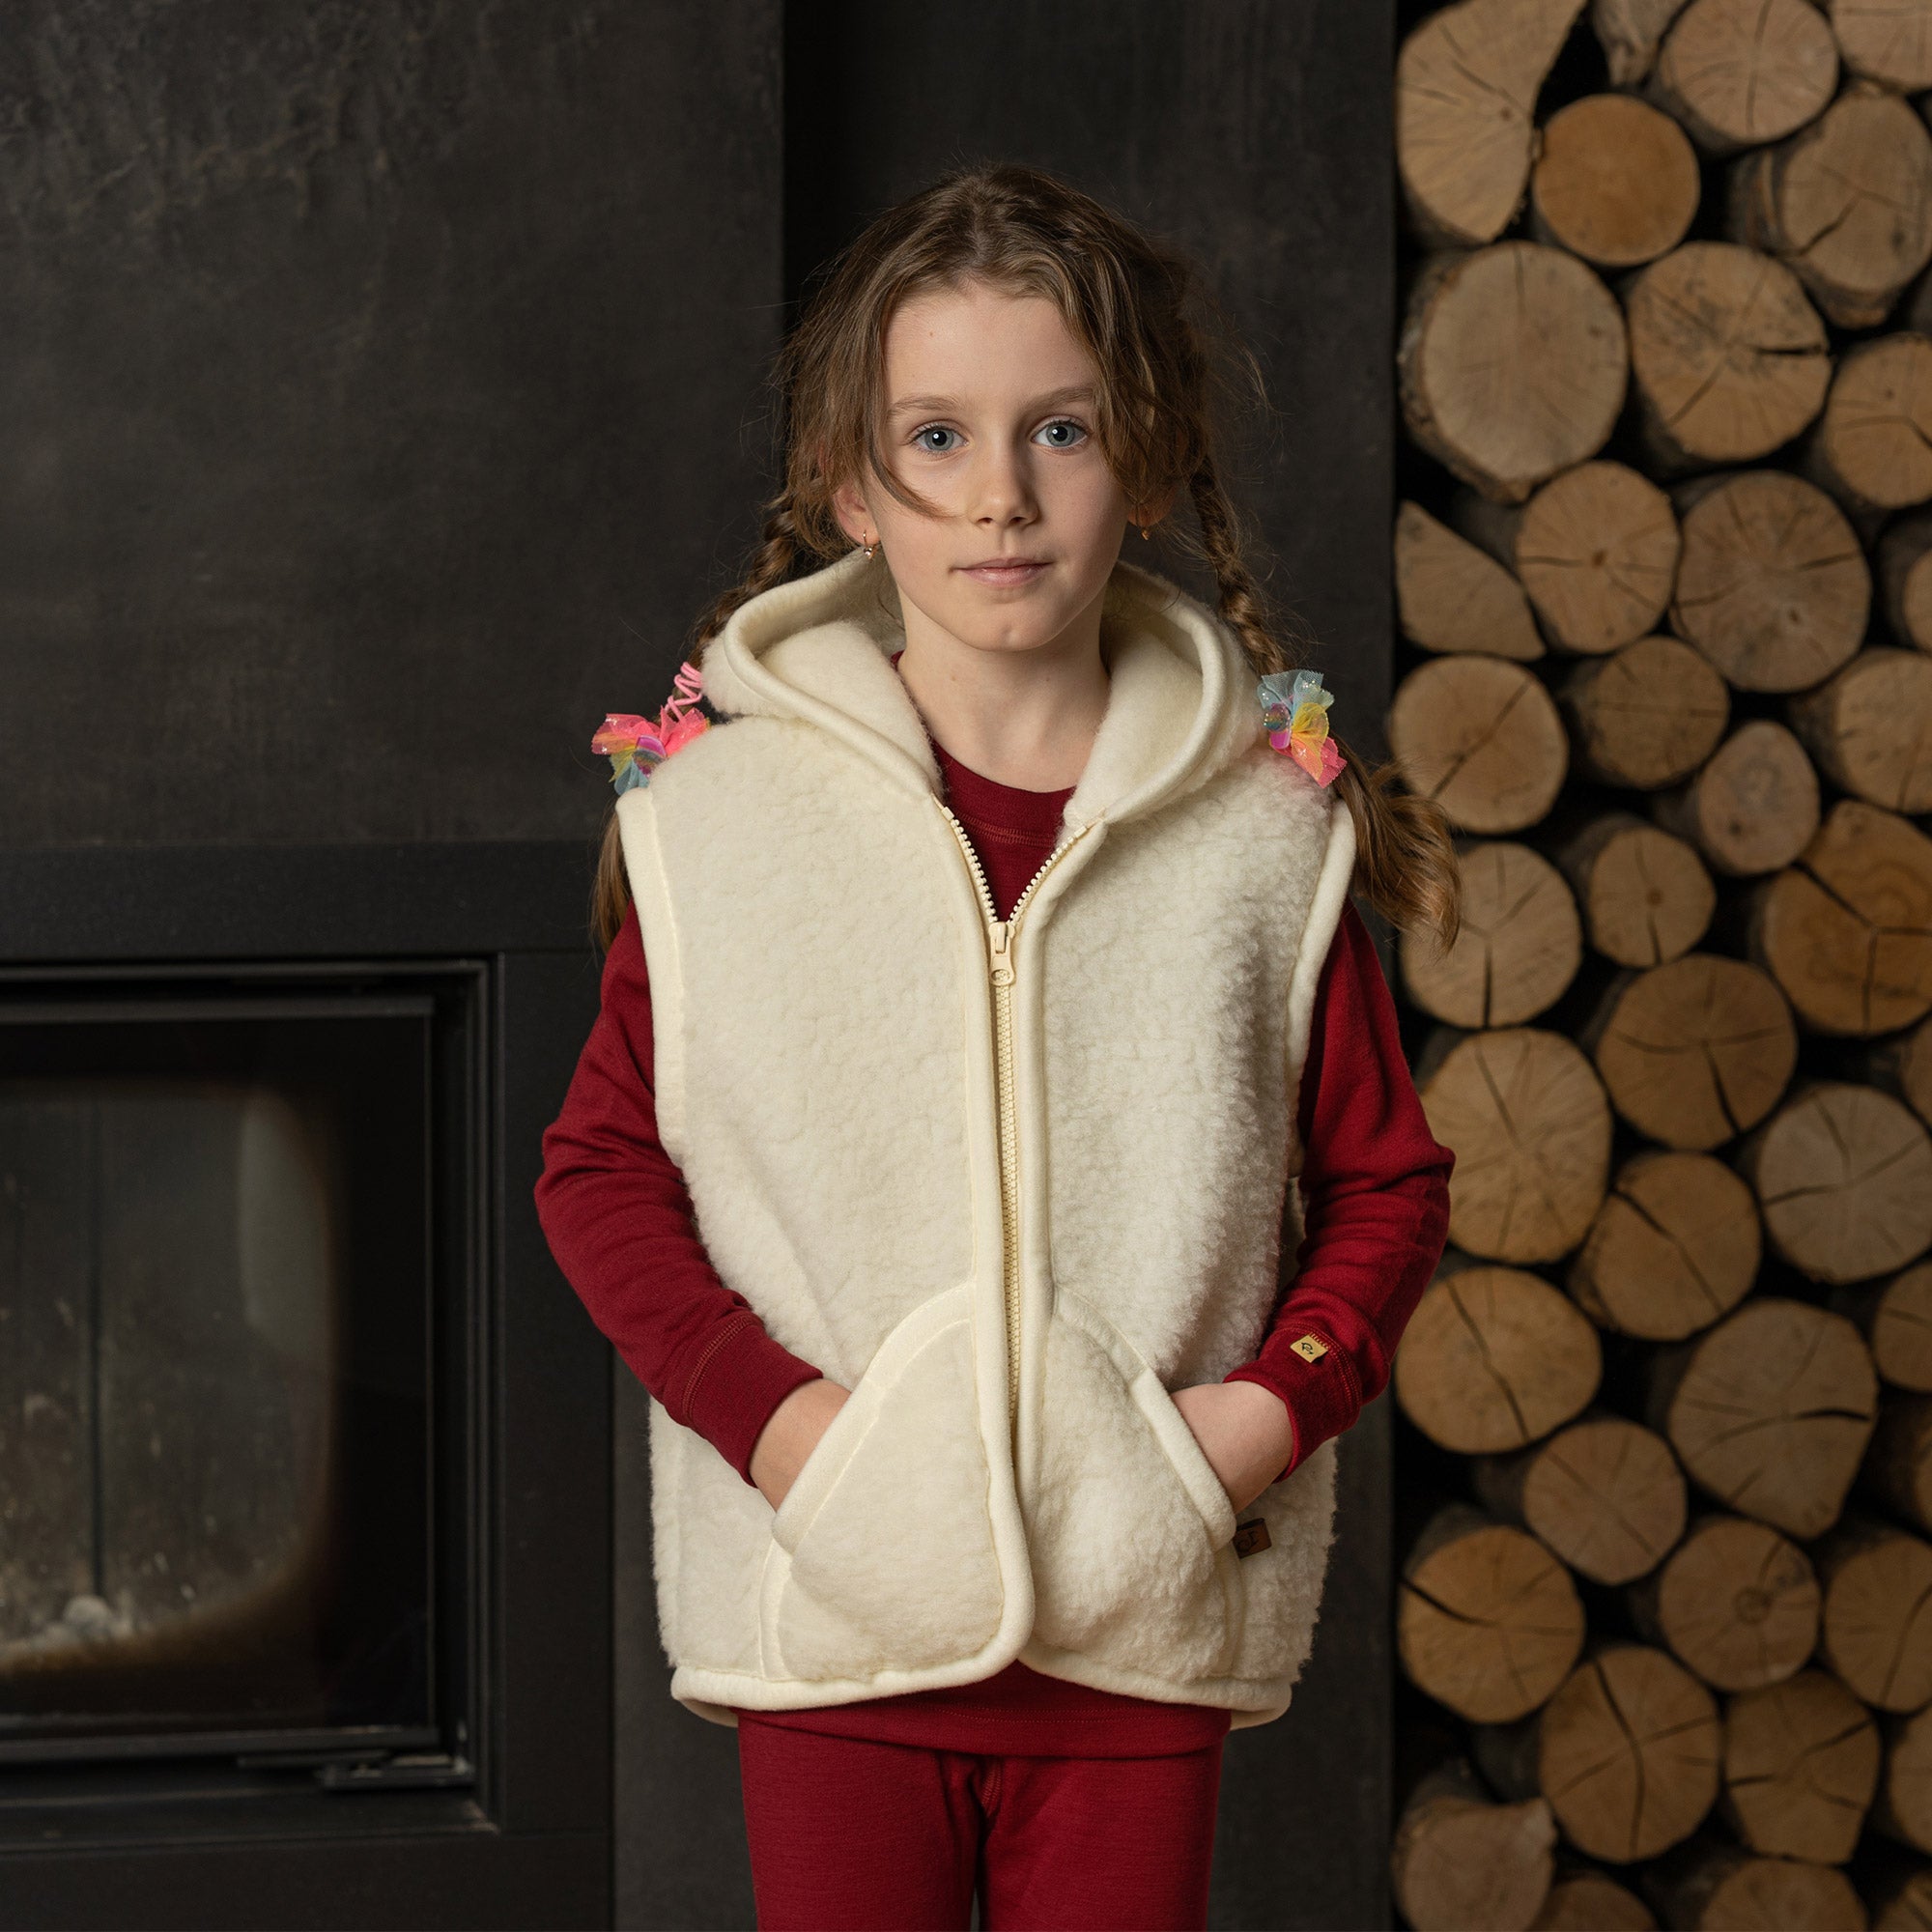 Kids Woolen Warm Hoody with Inner Fleece for Girls